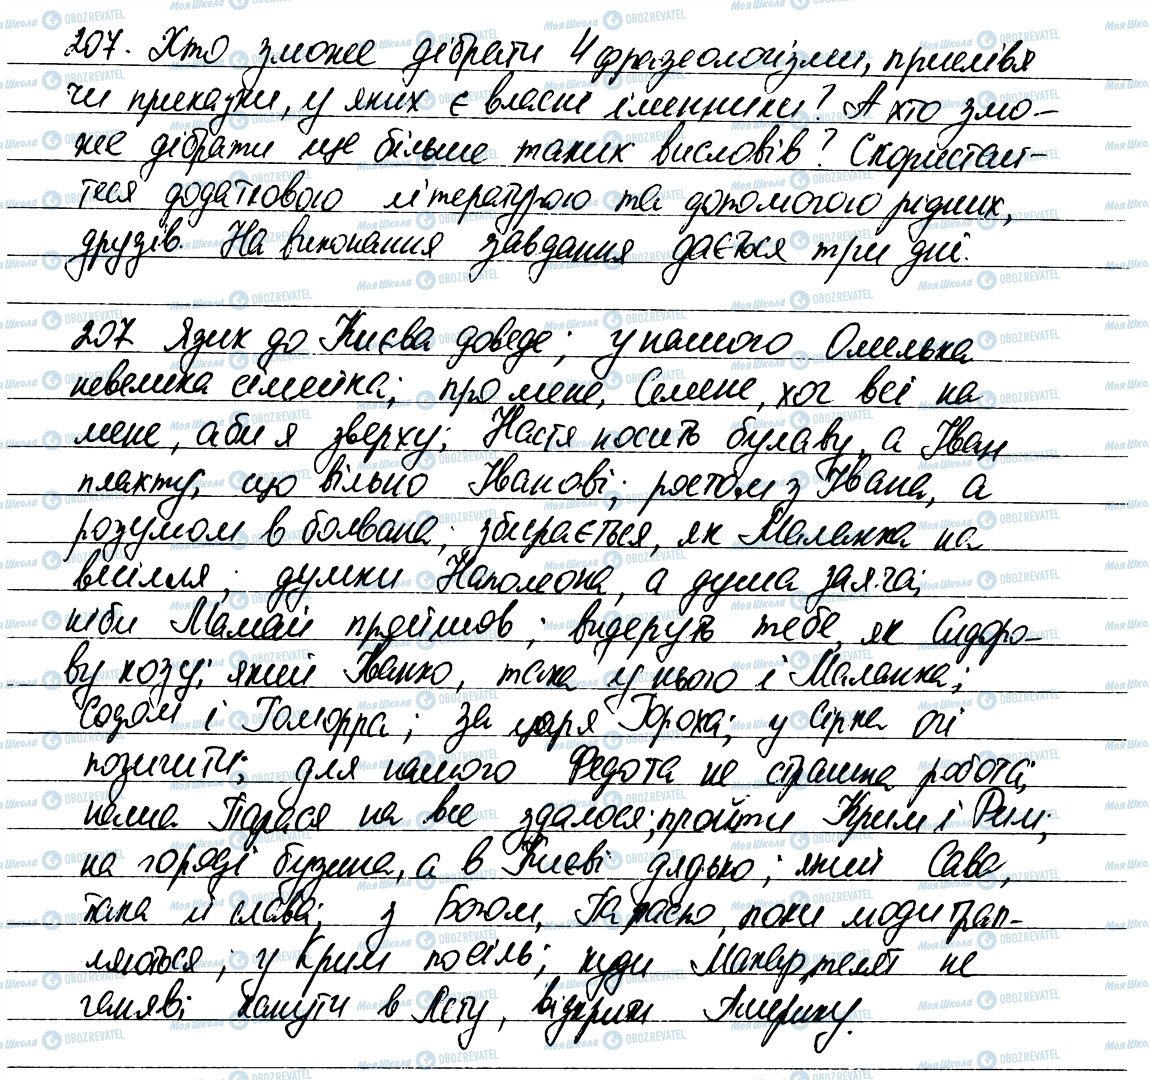 ГДЗ Українська мова 6 клас сторінка 207